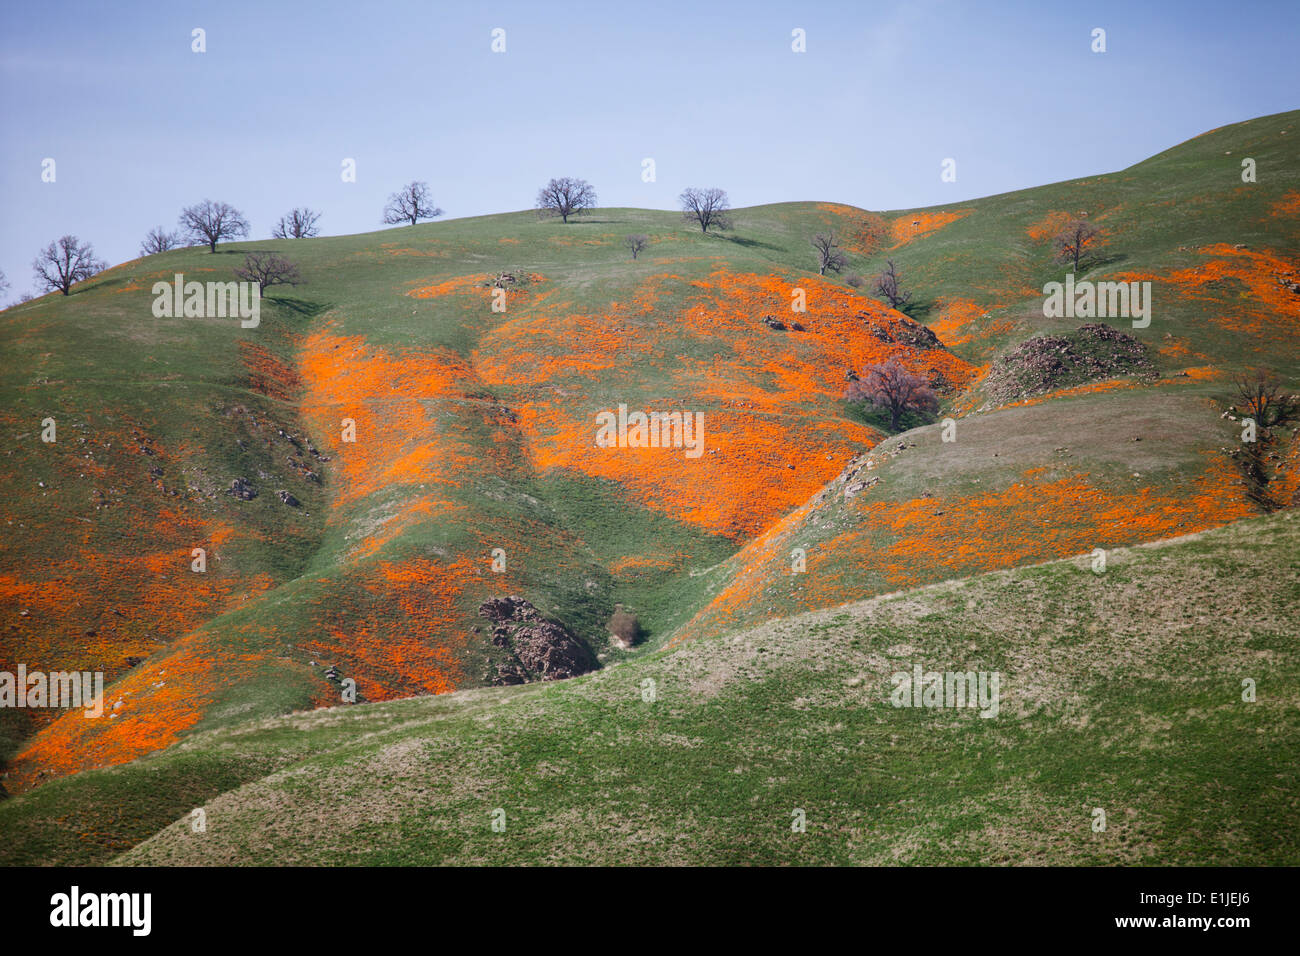 Undulating hillside, California, USA Stock Photo